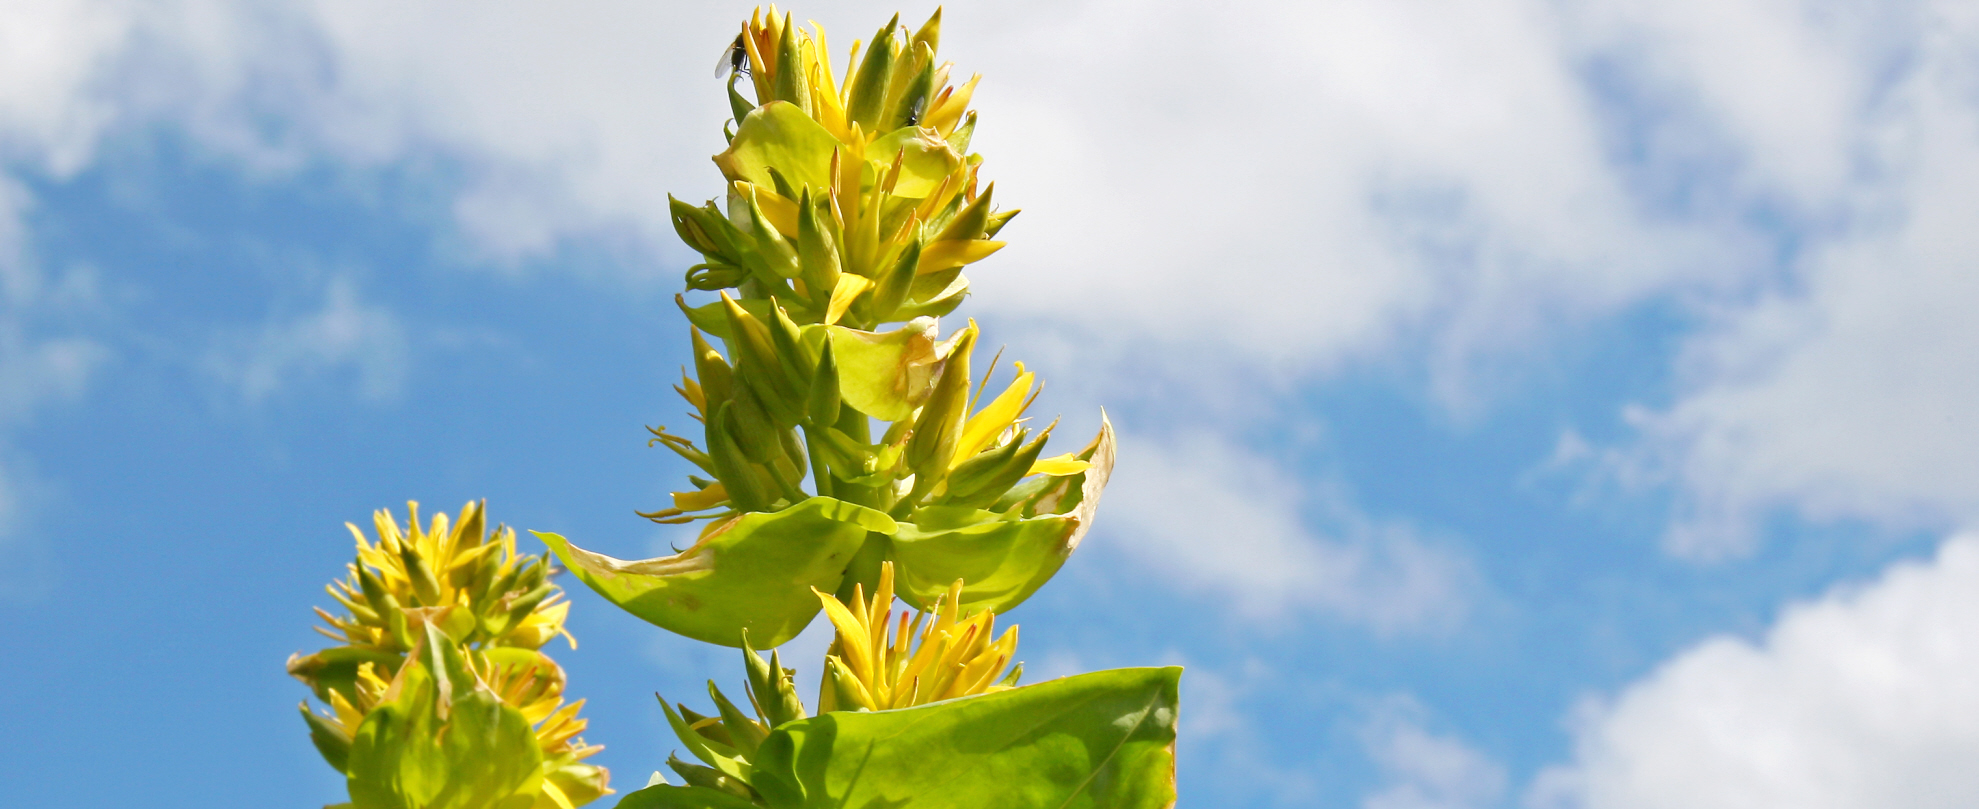 Der Gelbe Enzian gehört zu den bittersten Pflanzen der Welt